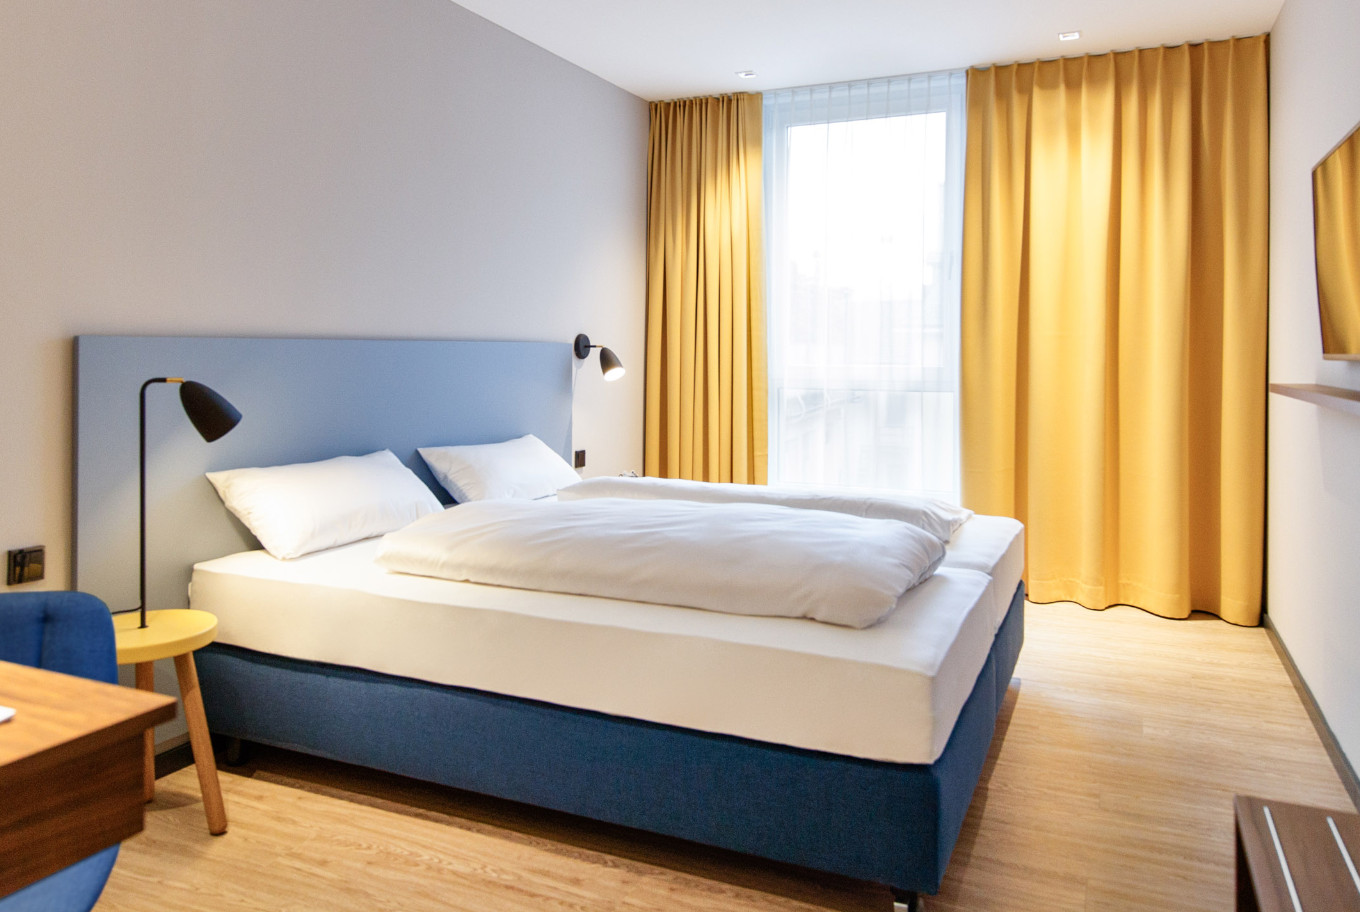 Die Betten in unserem Doppelzimmer im Hotel in Göppingen.